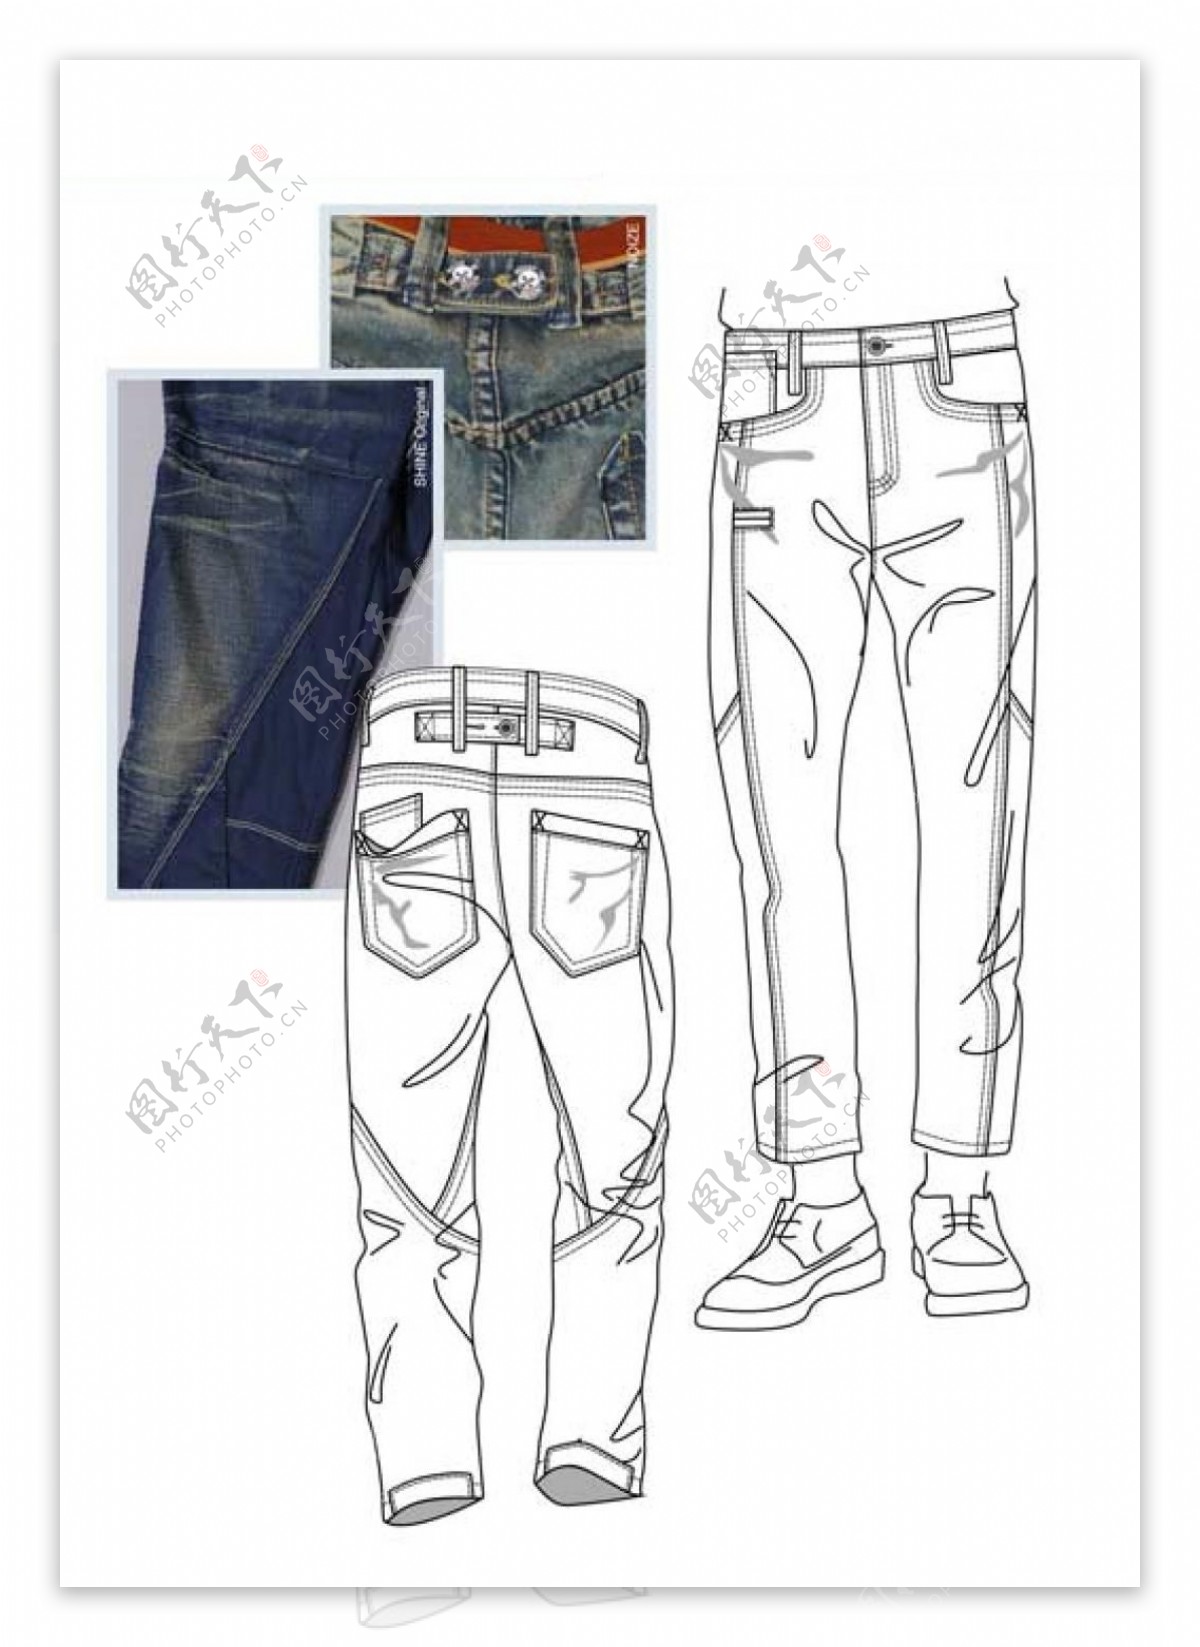 男款牛仔裤设计与实物对比图